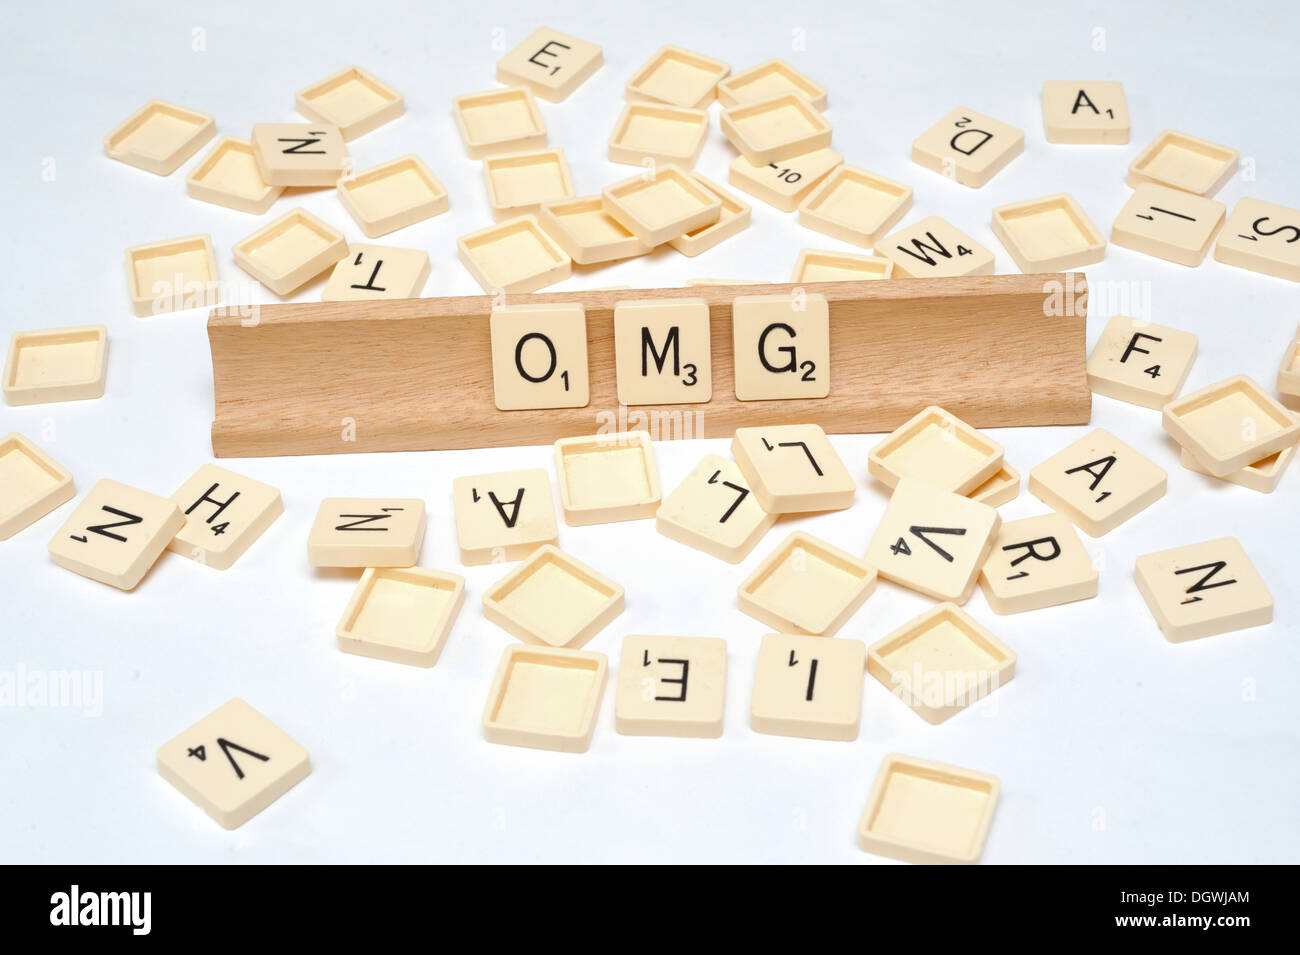 'OMG' written in scrabble tiles Stock Photo